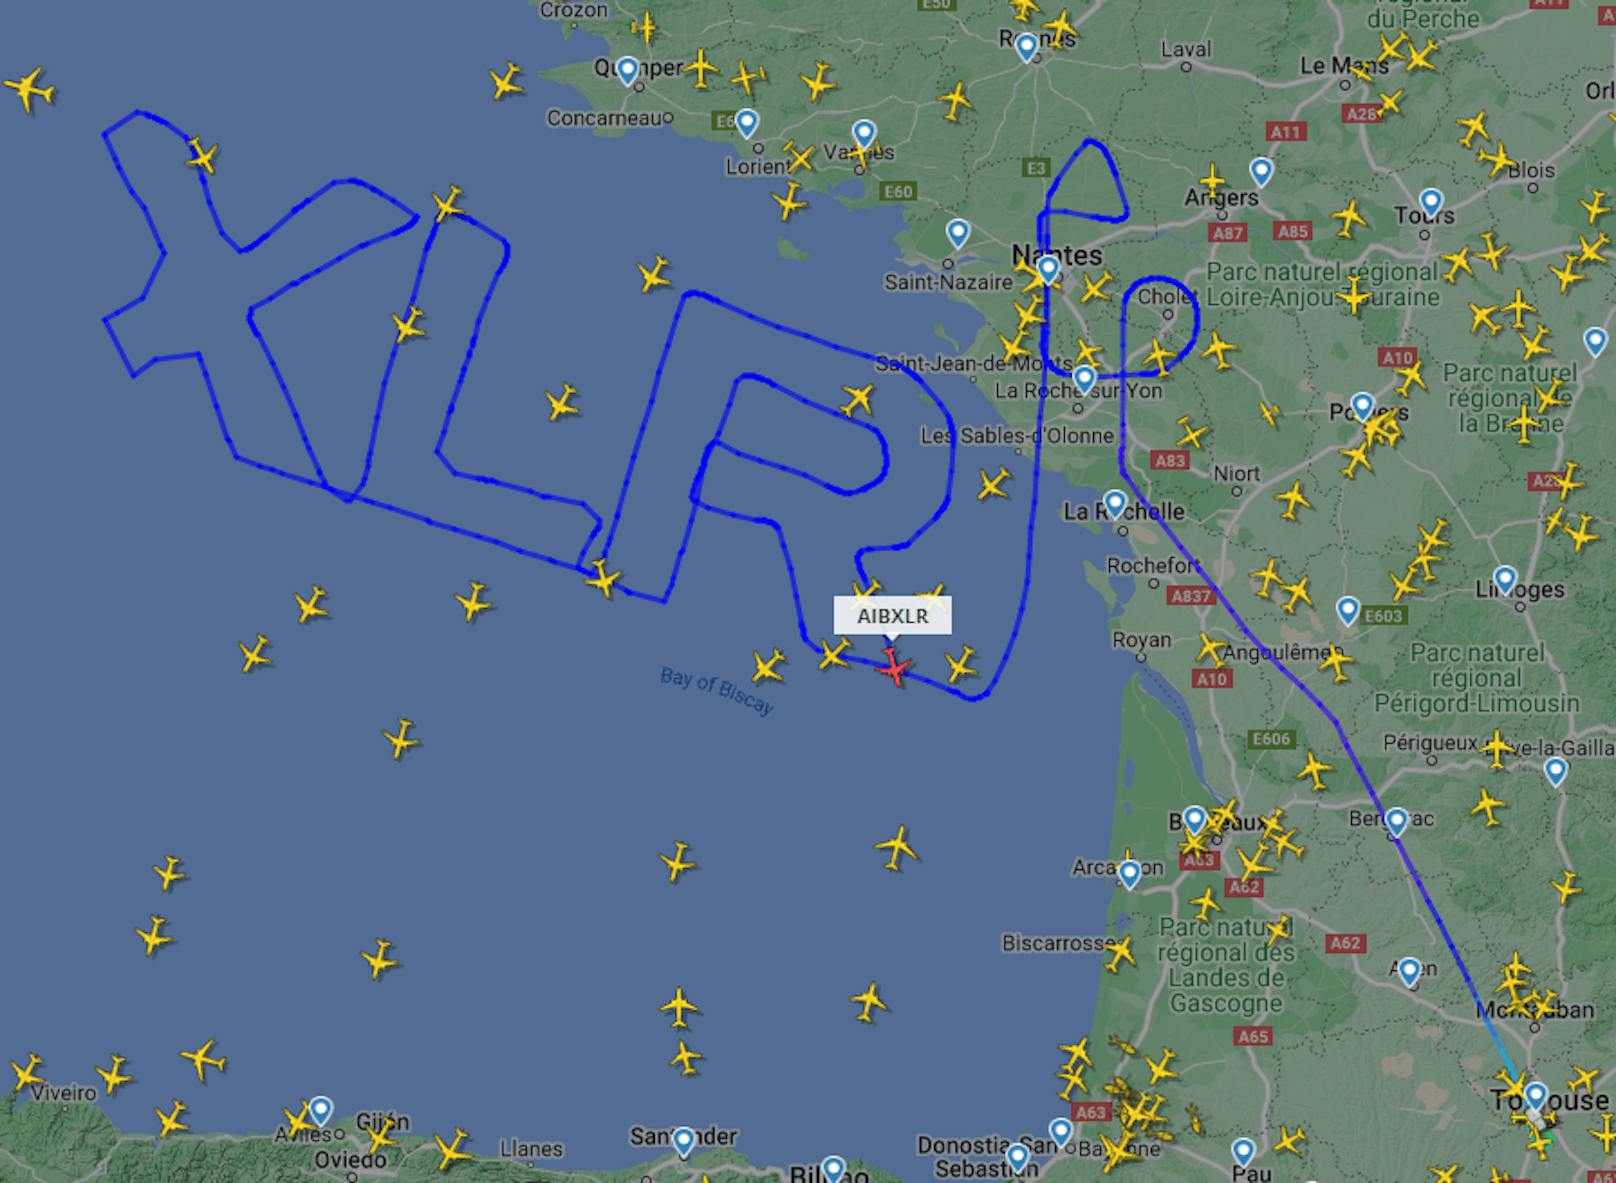 Der Airbus zog am Dienstag stundenlang über dem Golf von Biskaya seine Runden. Seine Route sorgt für Aufsehen.